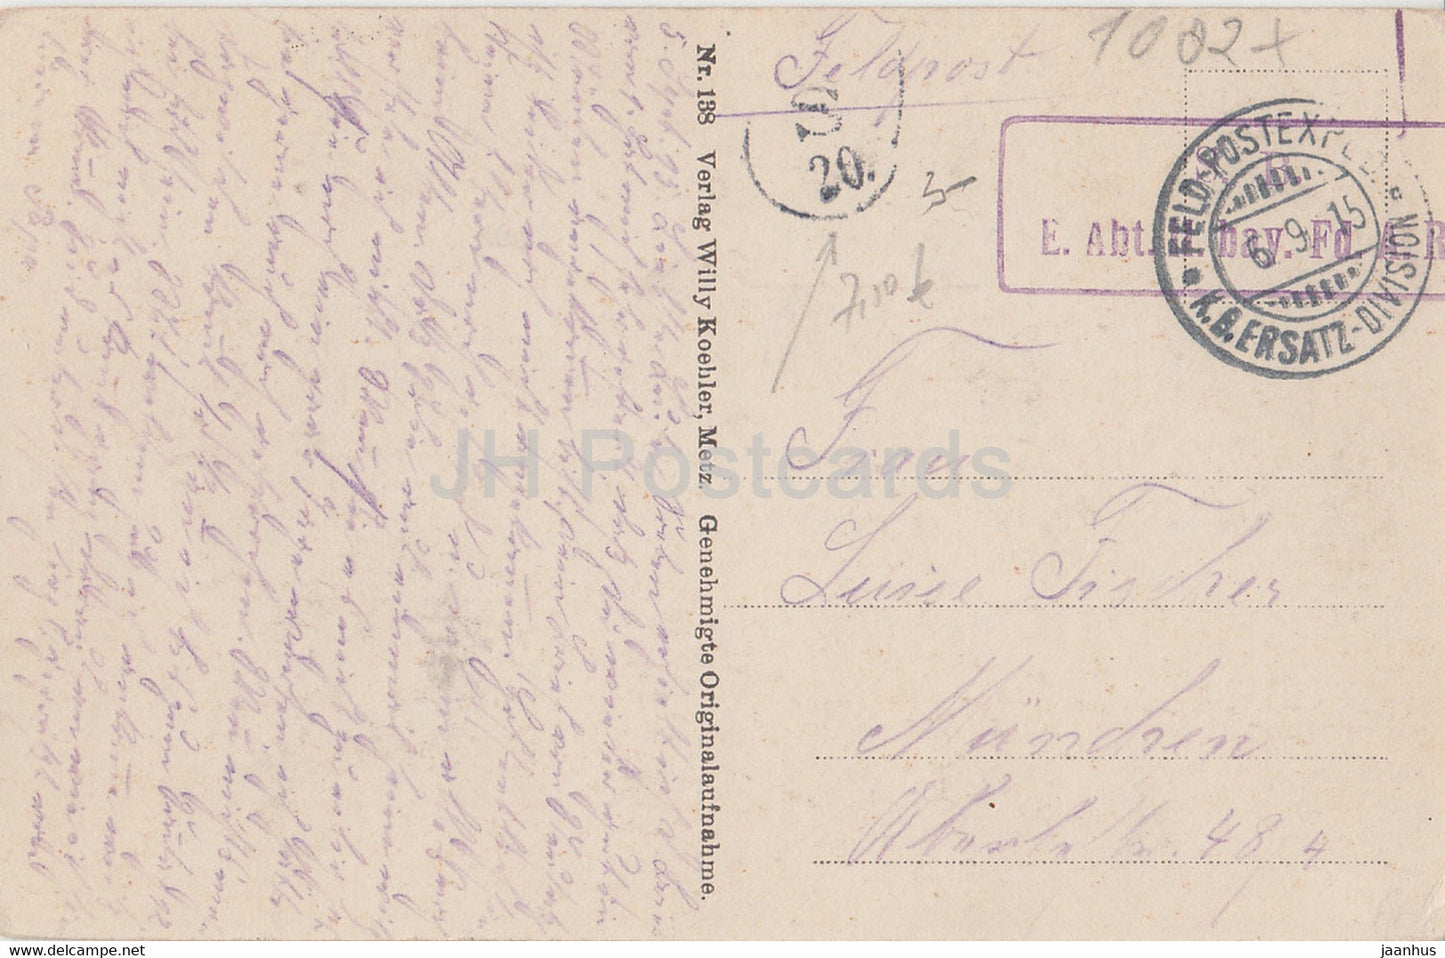 Neue Kriegsaufnahmen aus der Gegend von St Mihiel - Feldpost - old postcard - 1915 - France - used